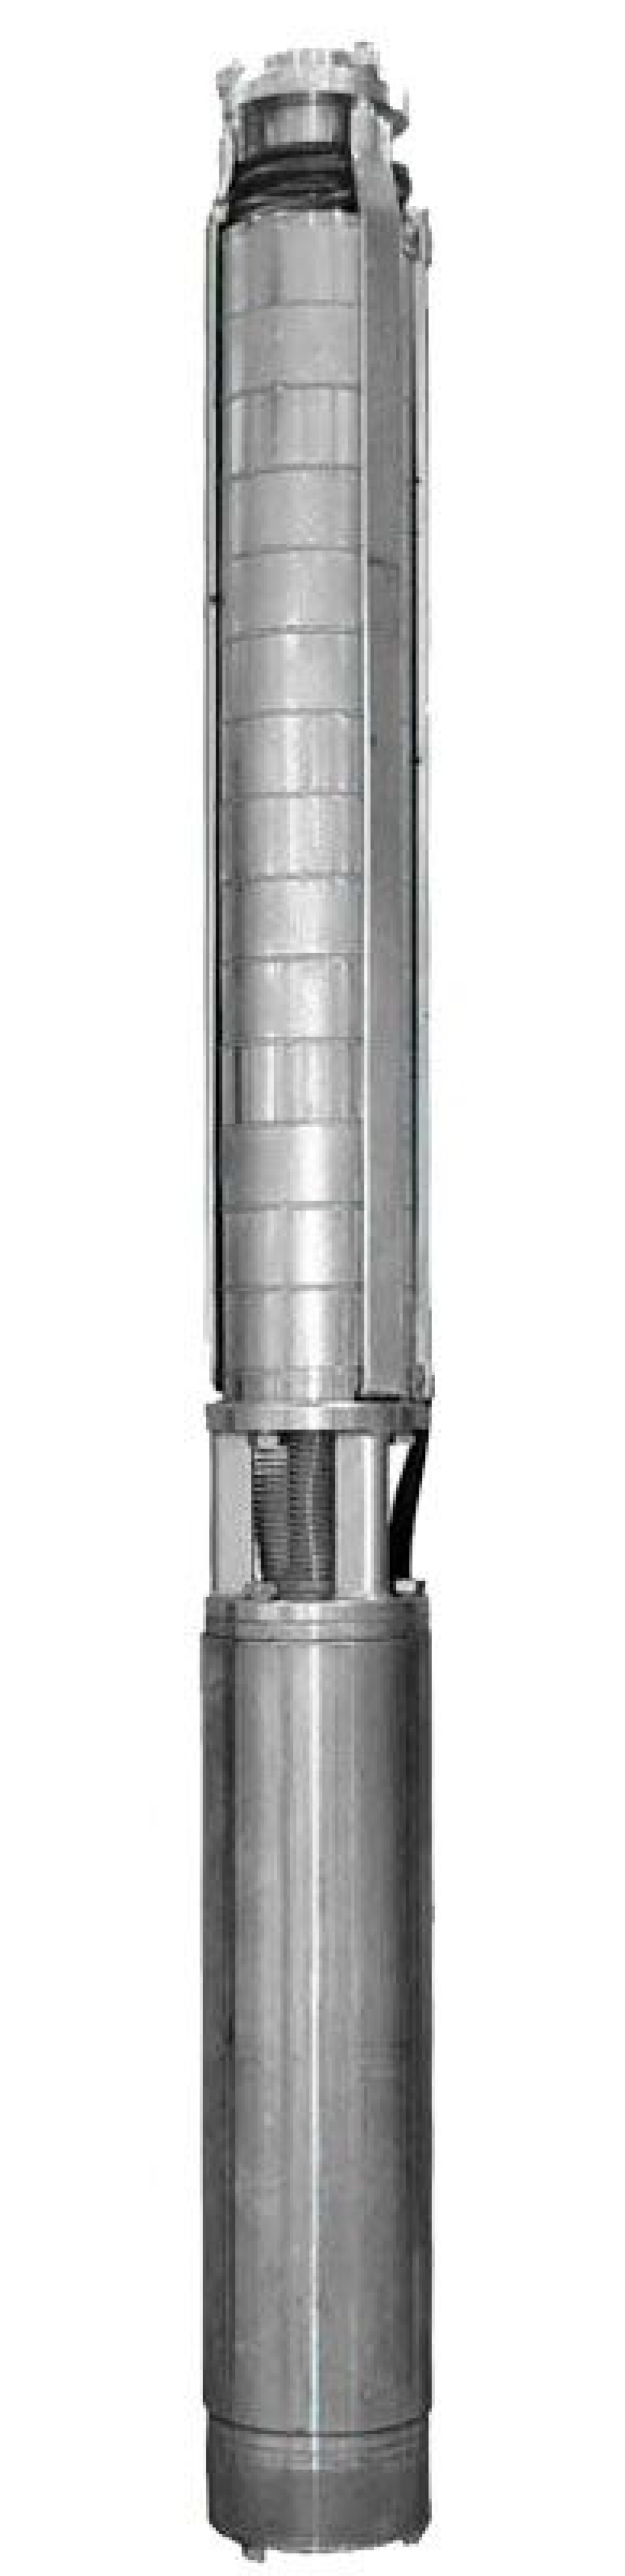 Насос скважинный Ливнынасос ЭЦВ 4-6.5-150 центробежный, производительность 6.5 м3/час, напор 150 м, мощность 5 кВт, напряжение трехфазной сети 380В